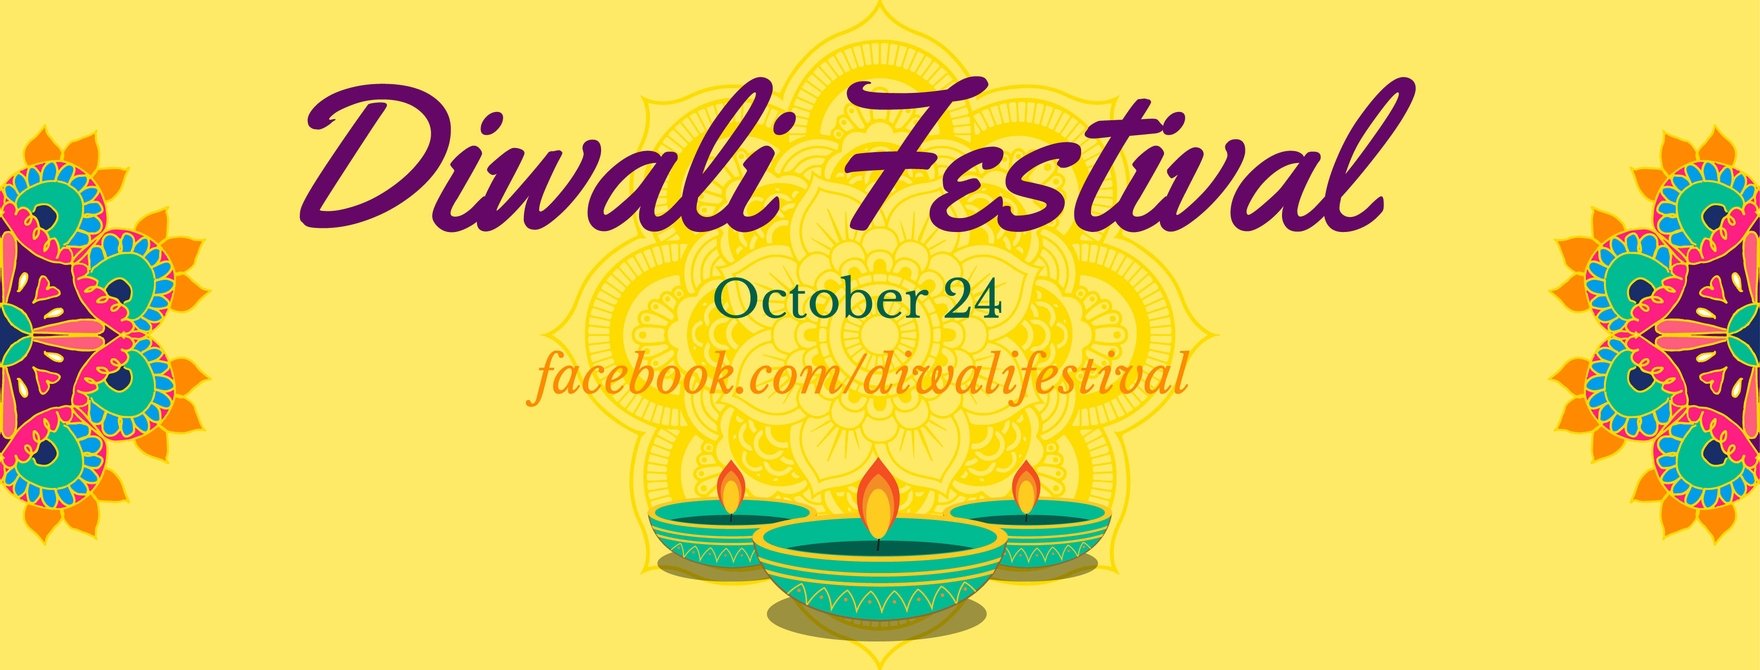 Diwali Facebook Cover Banner